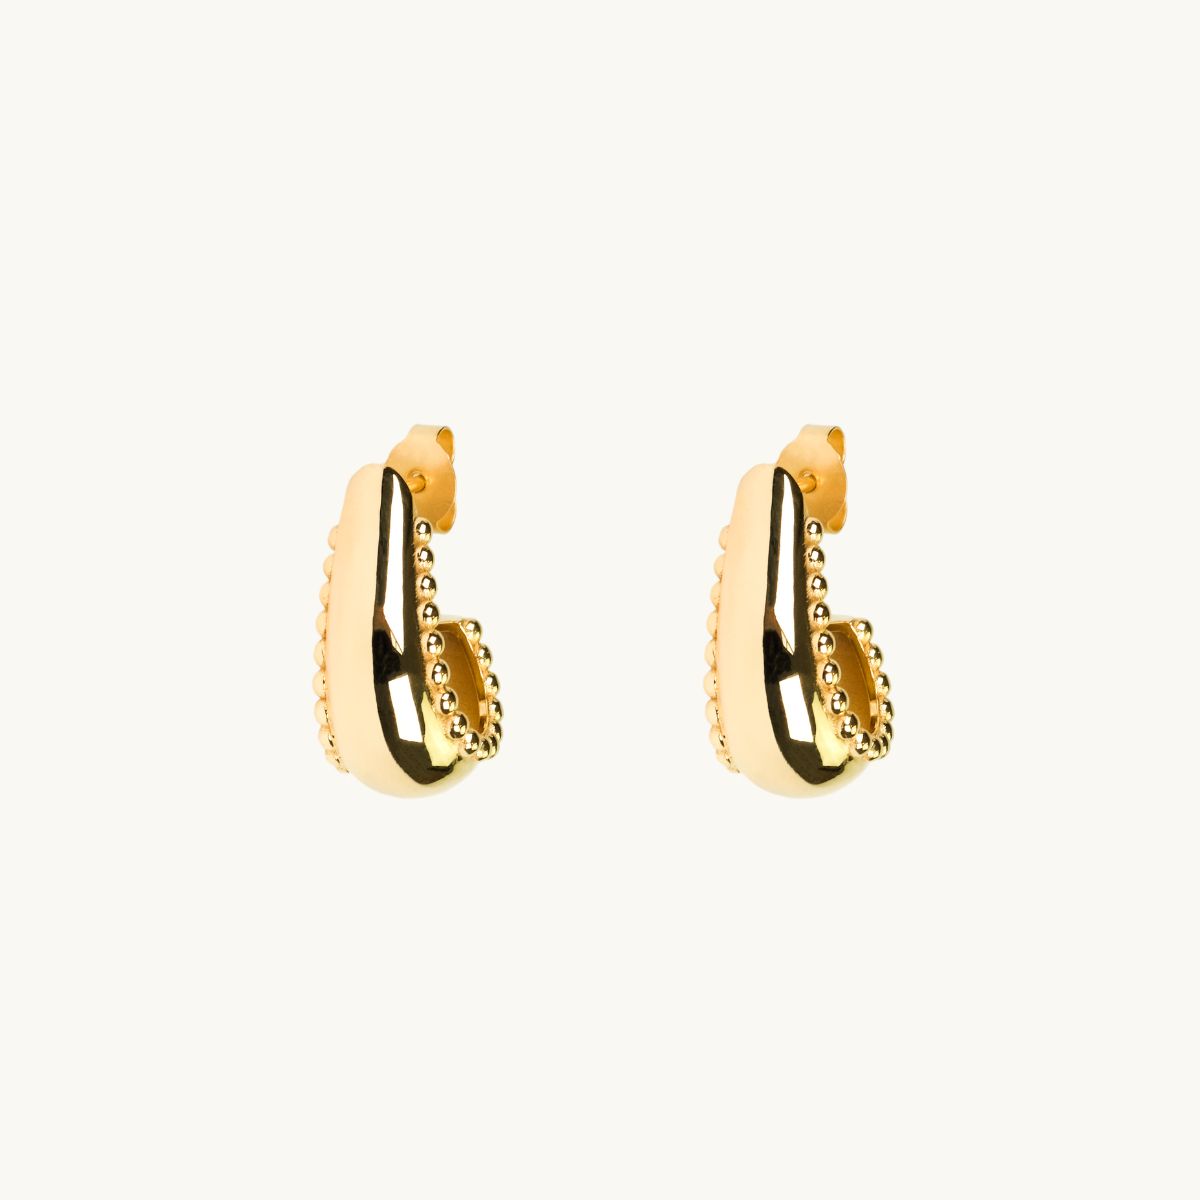 Earrings i gold in shape of a hook